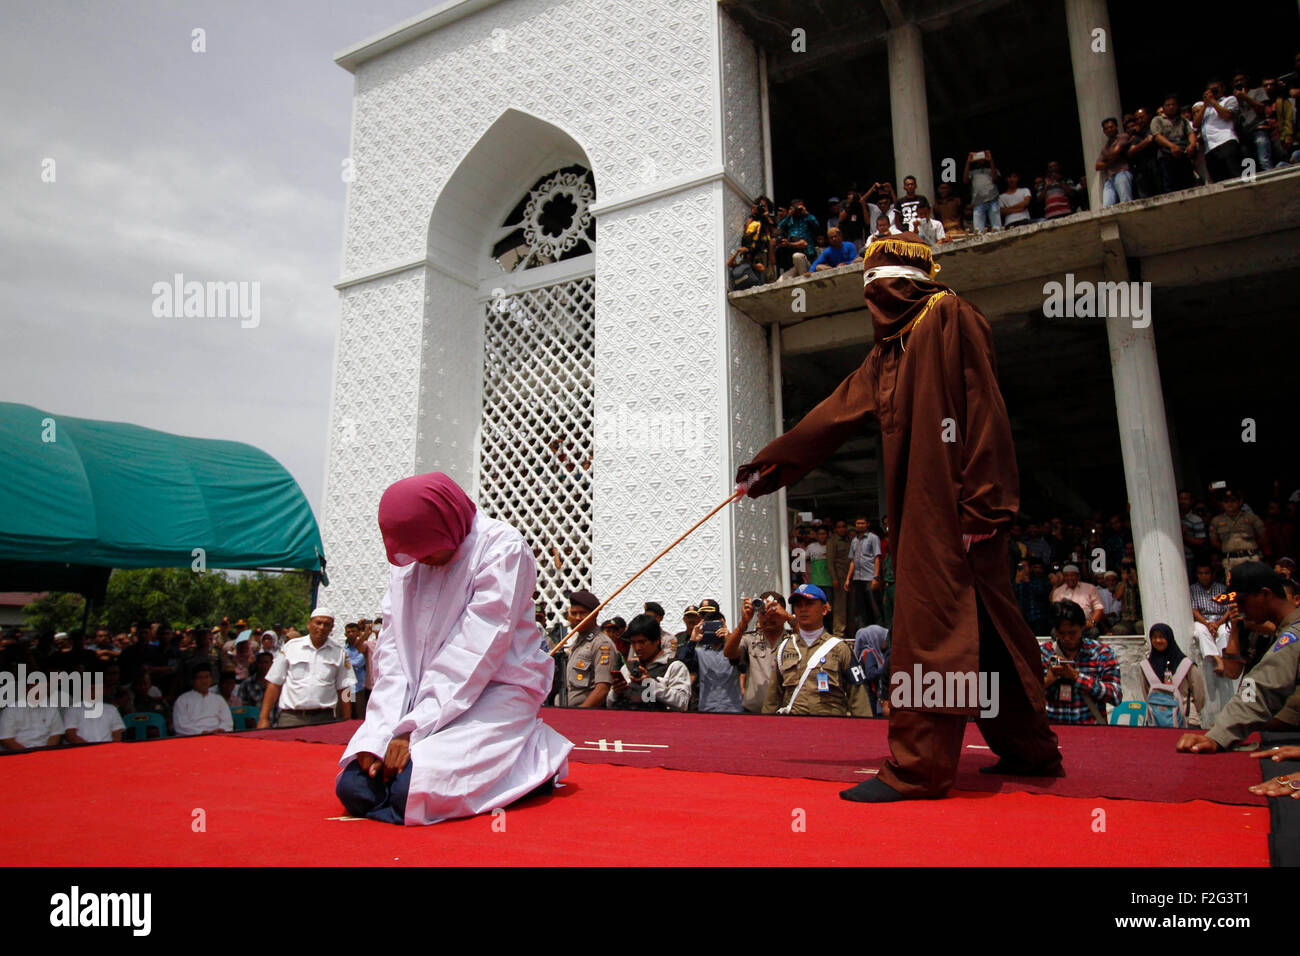 En Aceh, Indonesia. 18 Sep, 2015. Un hombre es azotado delante del público por violar la ley de la sharia en Banda Aceh, Indonesia, 18 de septiembre de 2015. Aceh es la única provincia de Indonesia que aplica la ley Sharia. Crédito: Junaidi/Xinhua/Alamy Live News Foto de stock